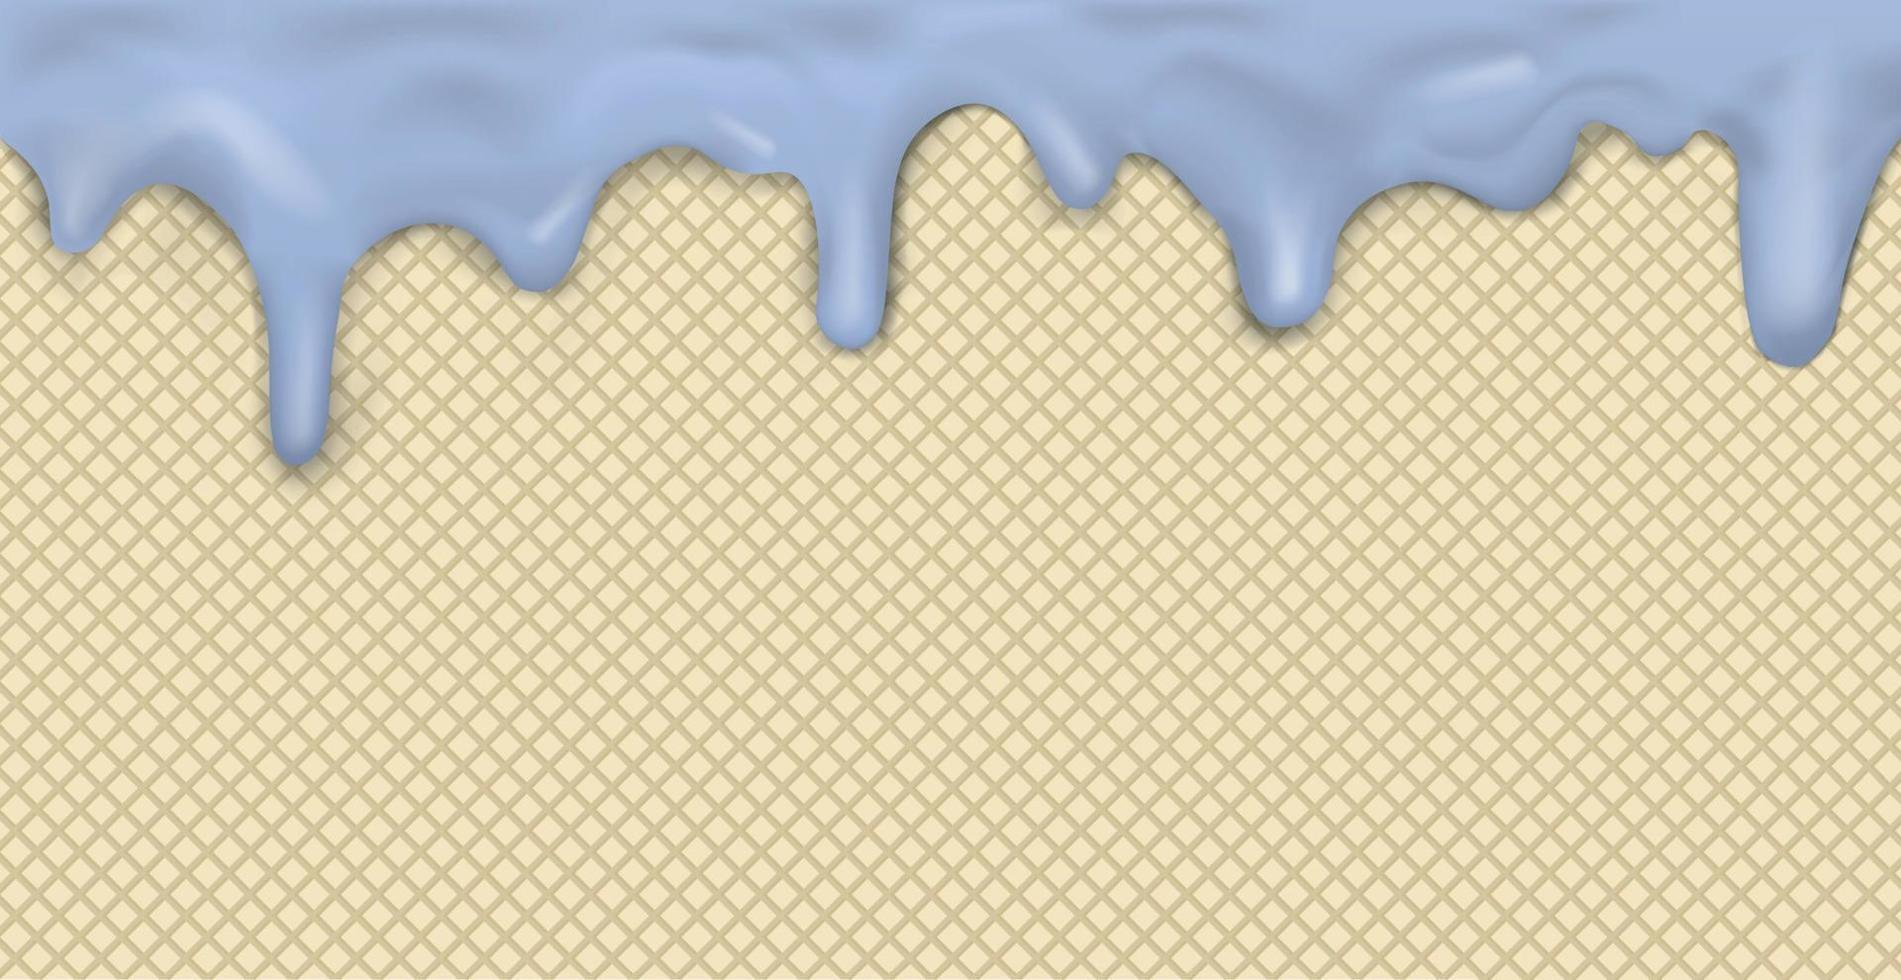 modèle de crème glacée panoramique transparente douce avec glaçage rose dégoulinant et texture de gaufrette - vecteur